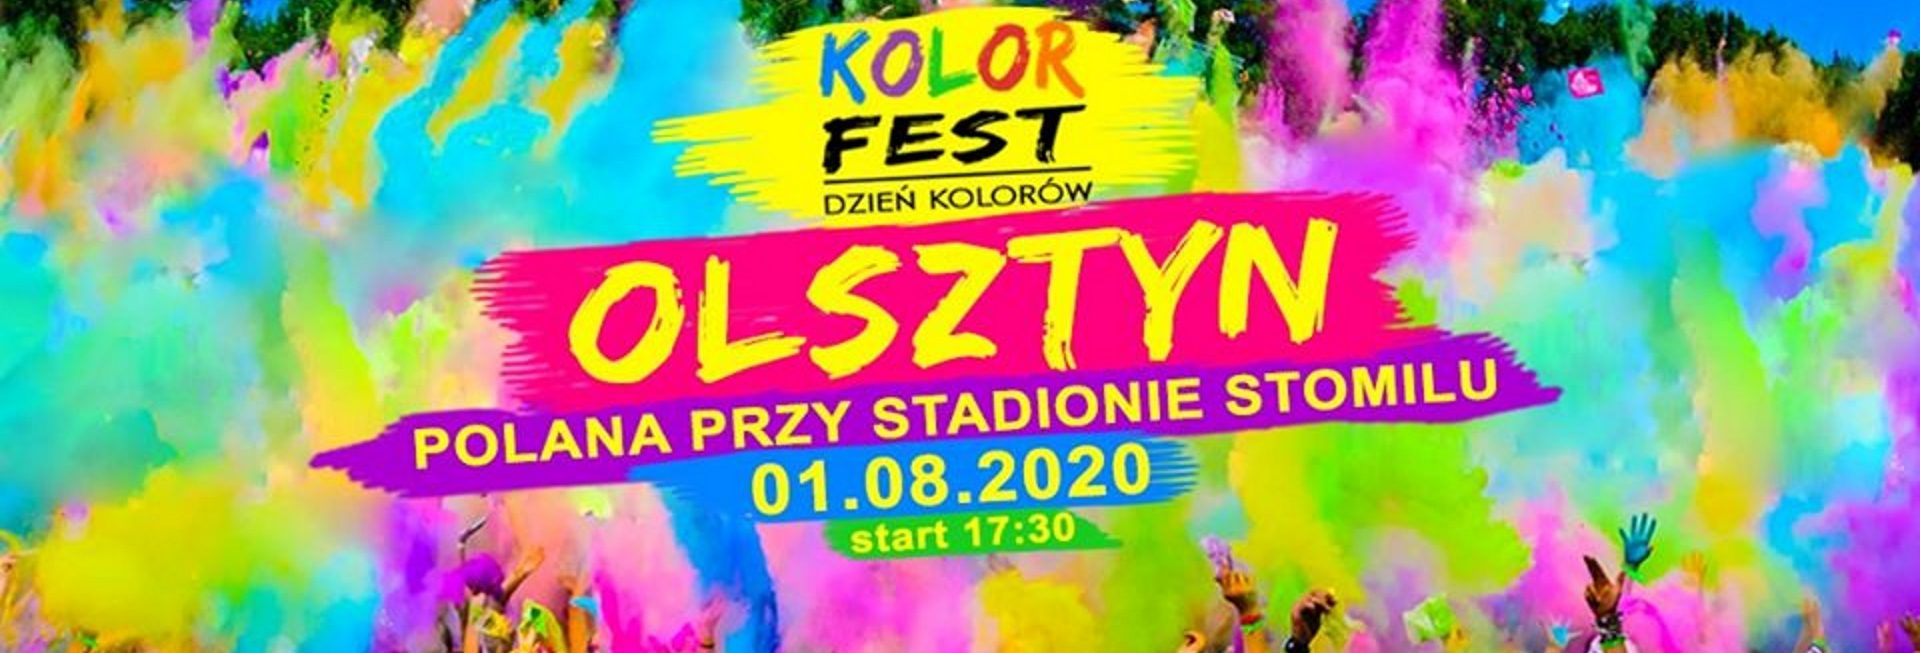 Plakat graficzny zapraszający do Olsztyna na imprezę Kolor Fest Olsztyn - Dzień Kolorów w Olsztynie 2020, Na plakacie zdjęcie bawiącej się publiczności a nad nimi chmura wielokolorowych proszków.     